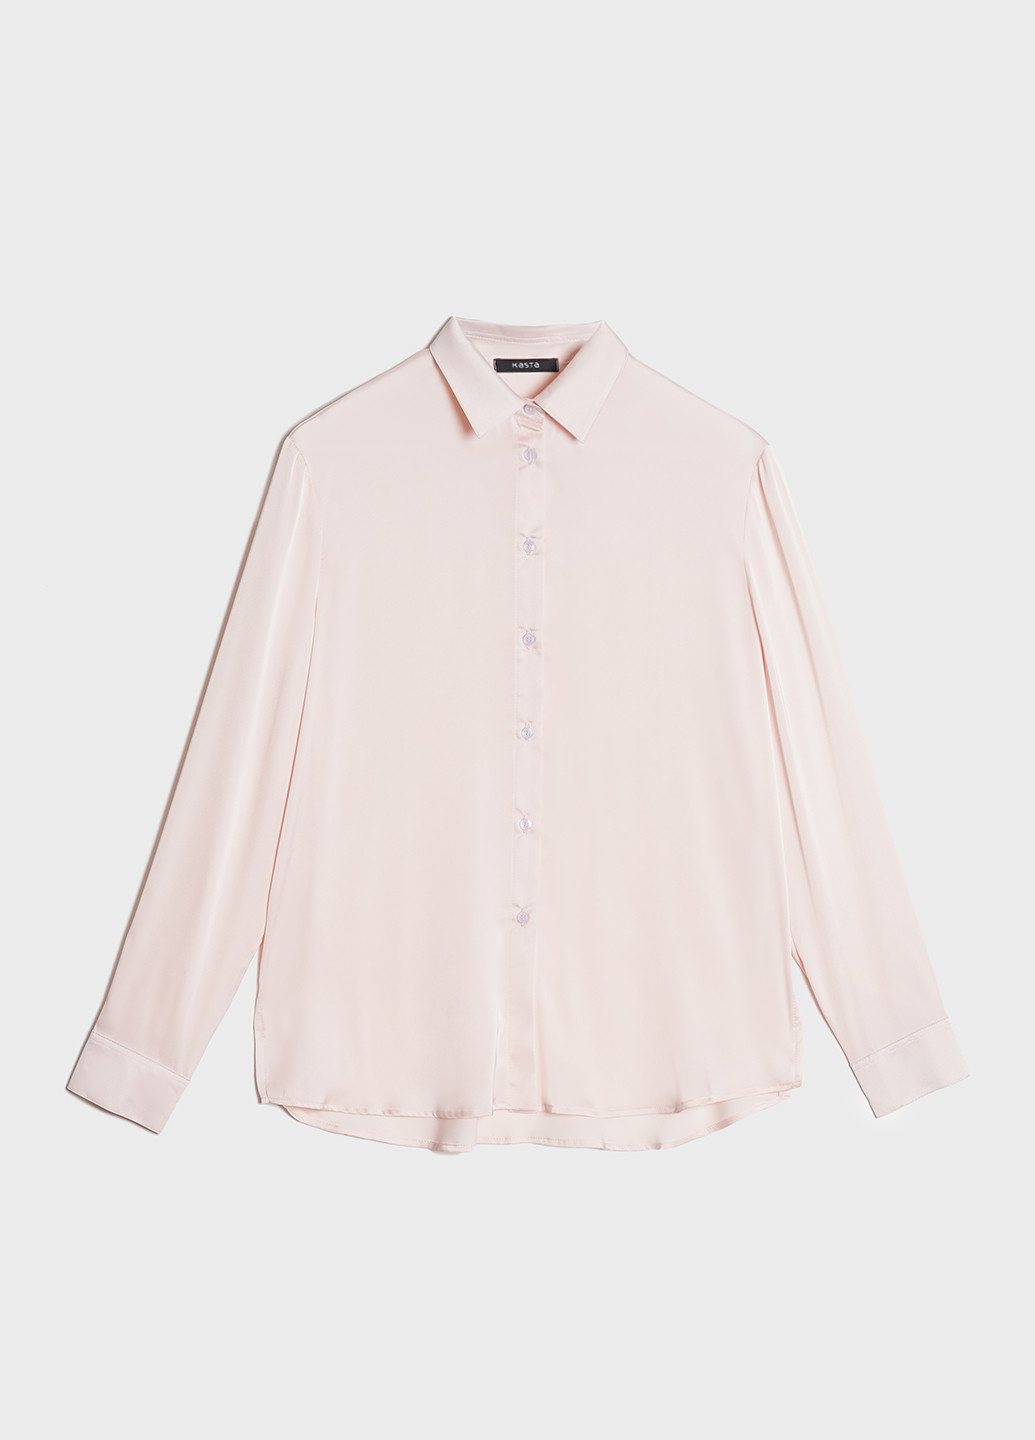 Світло-рожева демісезонна блуза жіноча атласна KASTA design